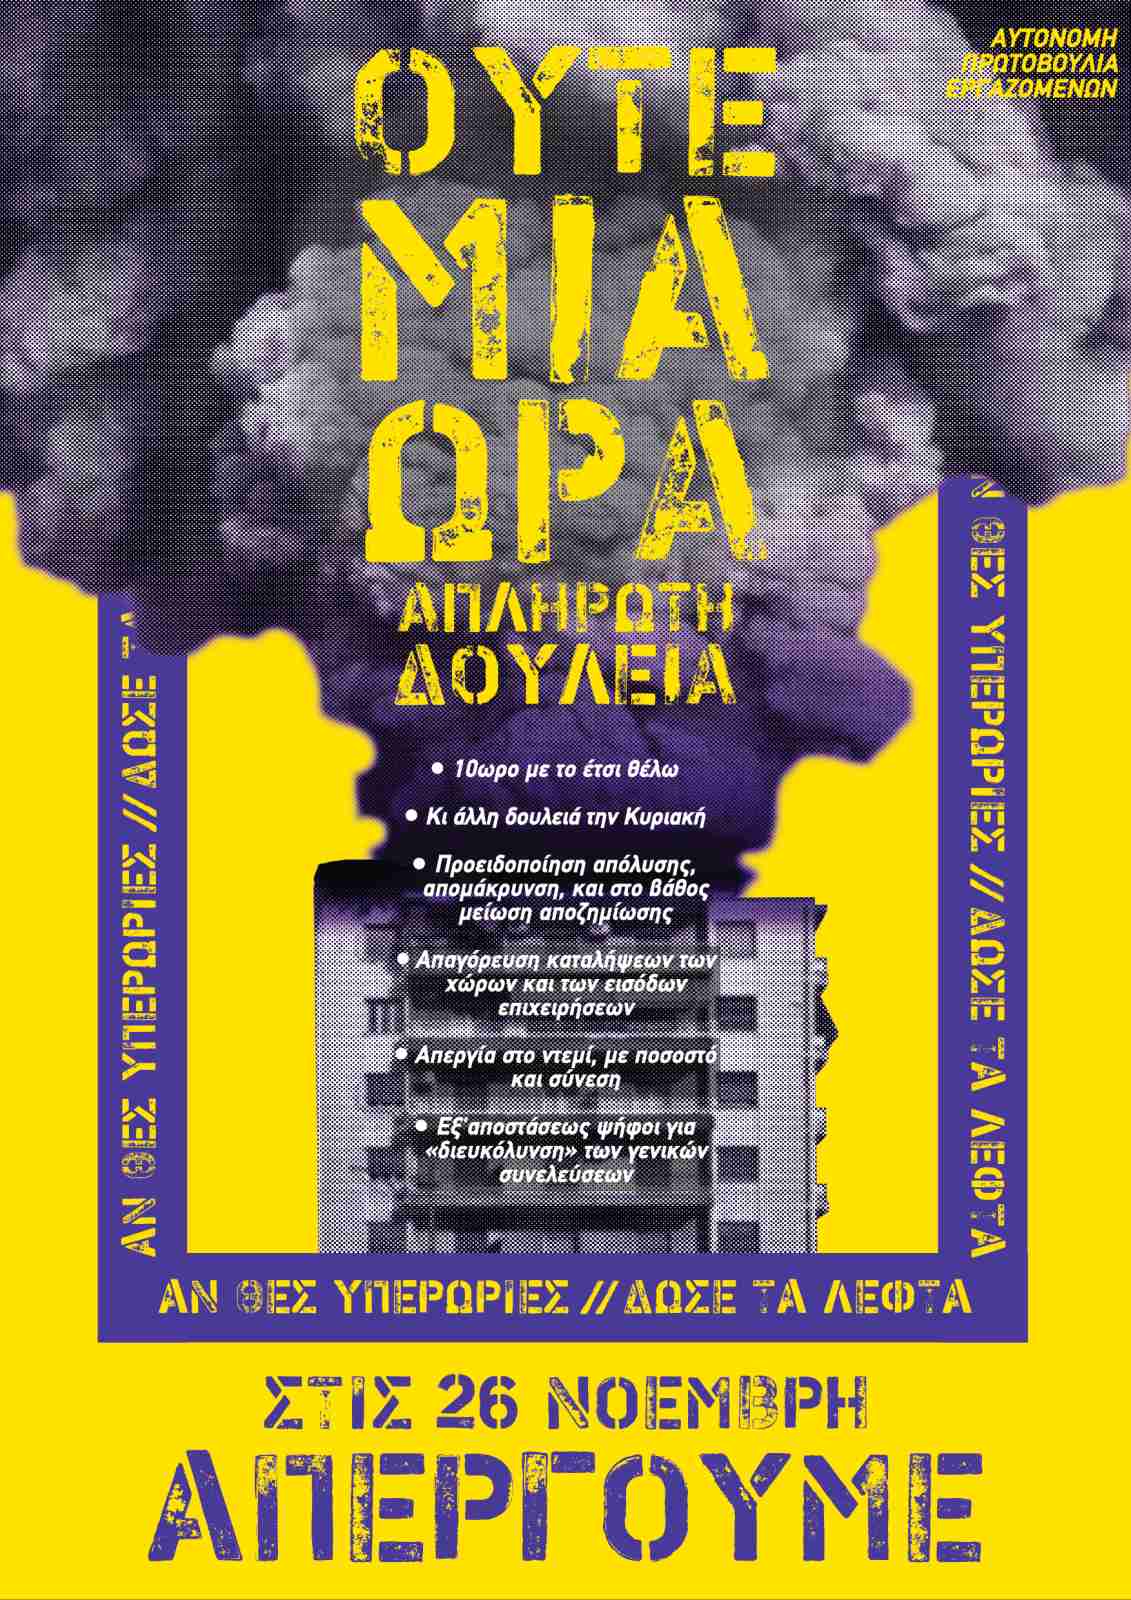 Απεργία 26 Νοέμβρη Ηράκλειο Κρήτης